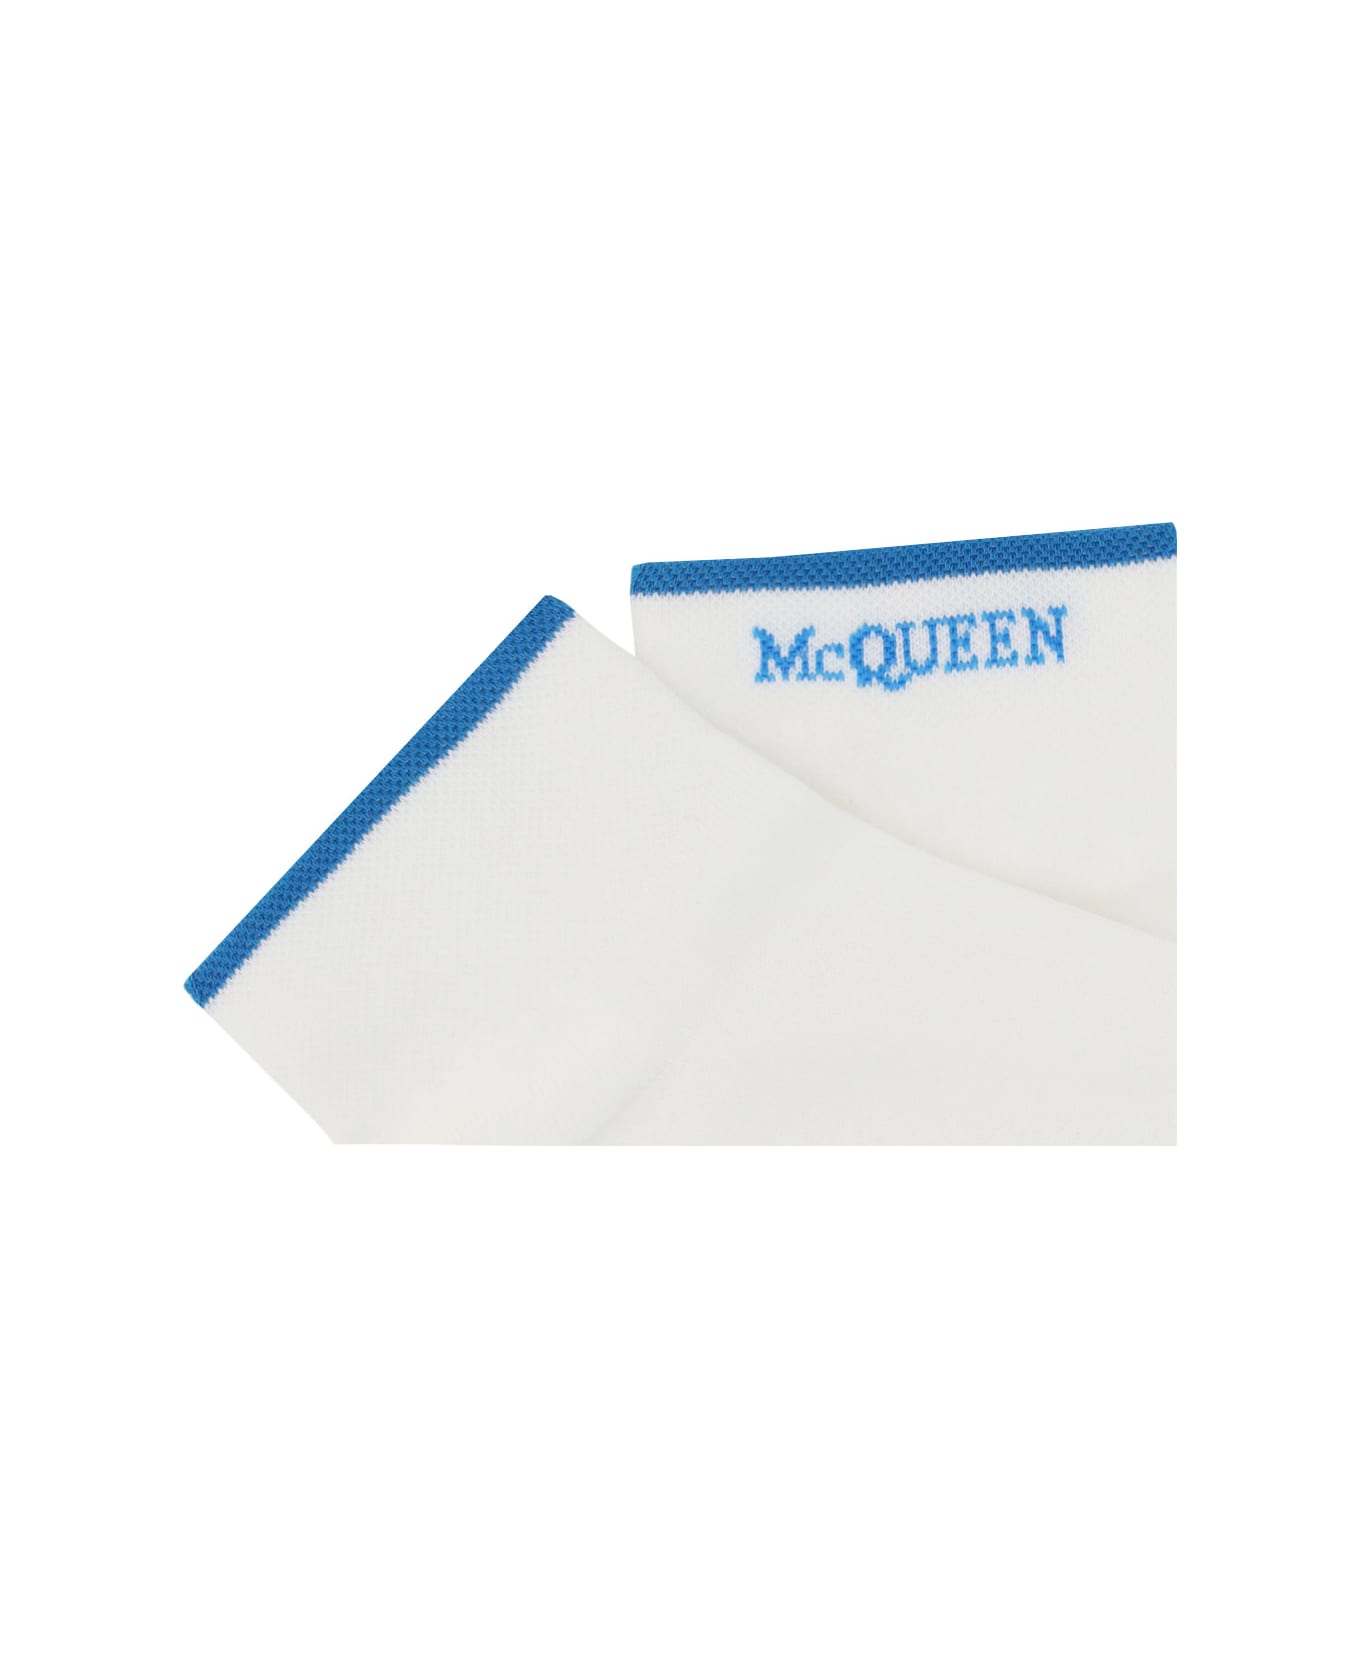 Alexander McQueen Socks - White/sky Blue